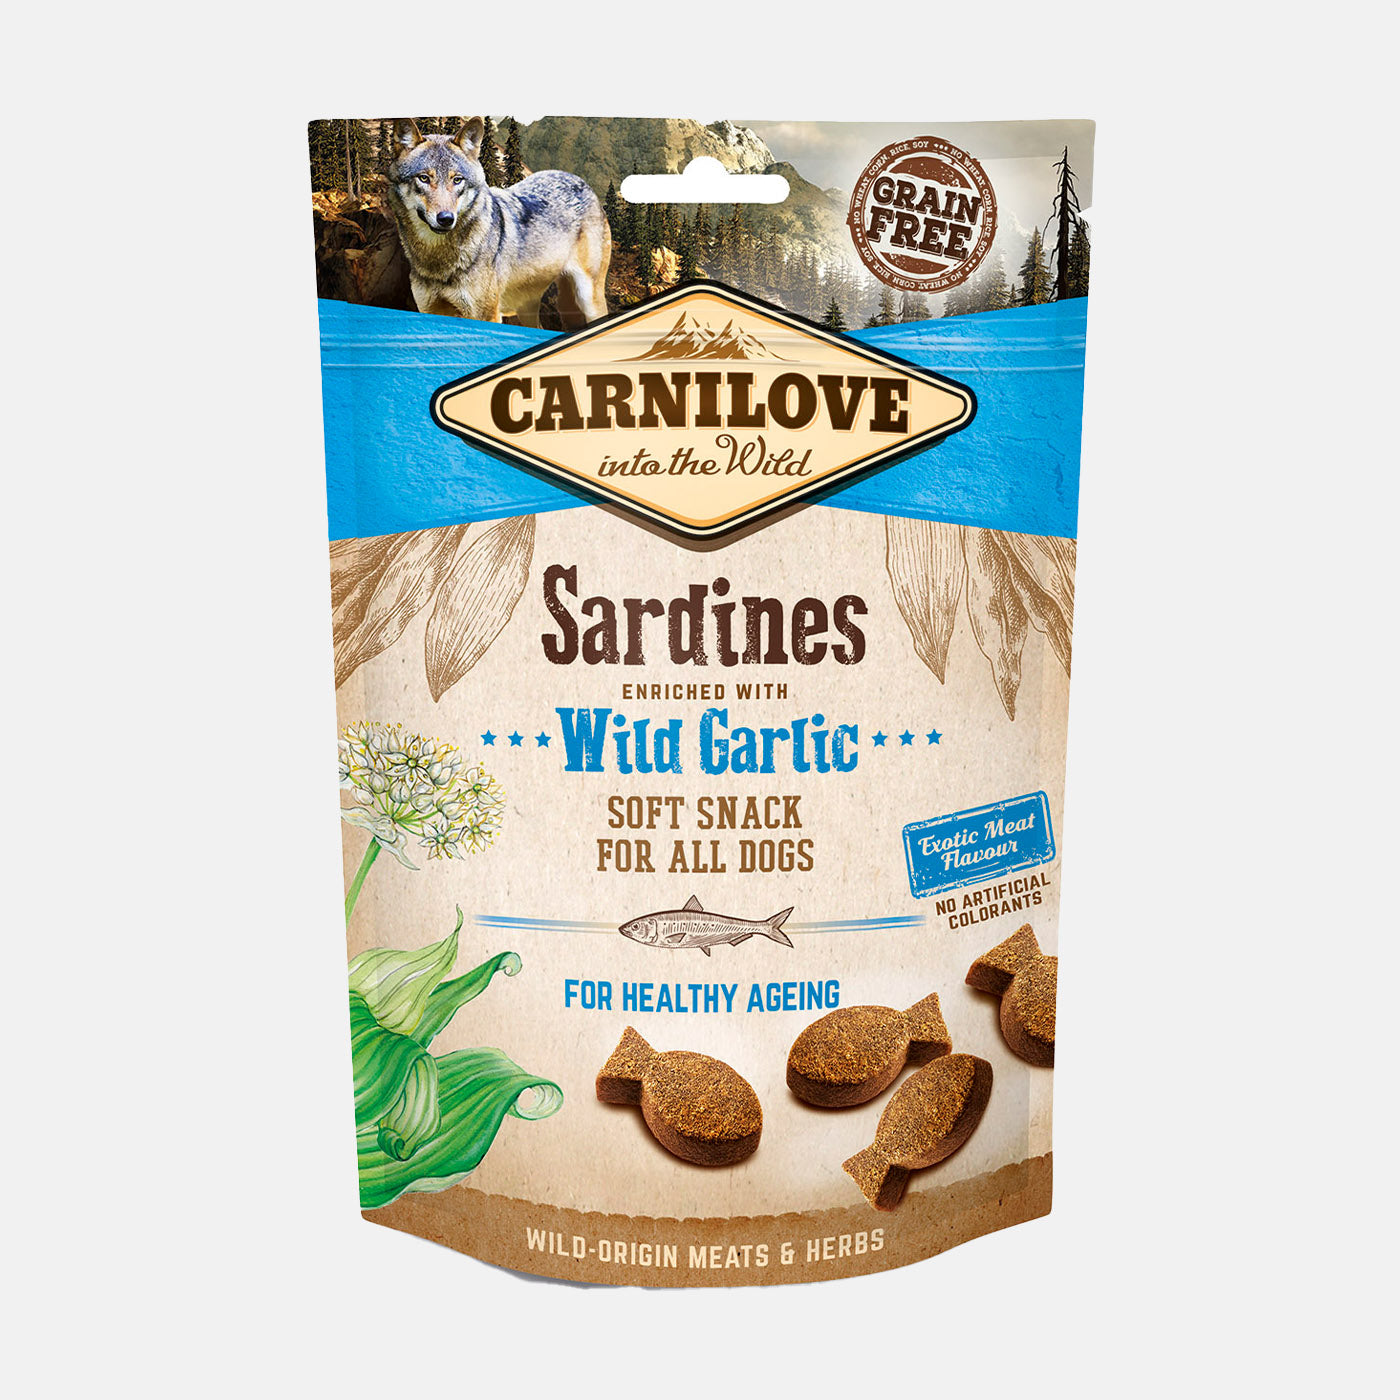 Carnilove Sardines with Wild Garlic Dog Treats 200g